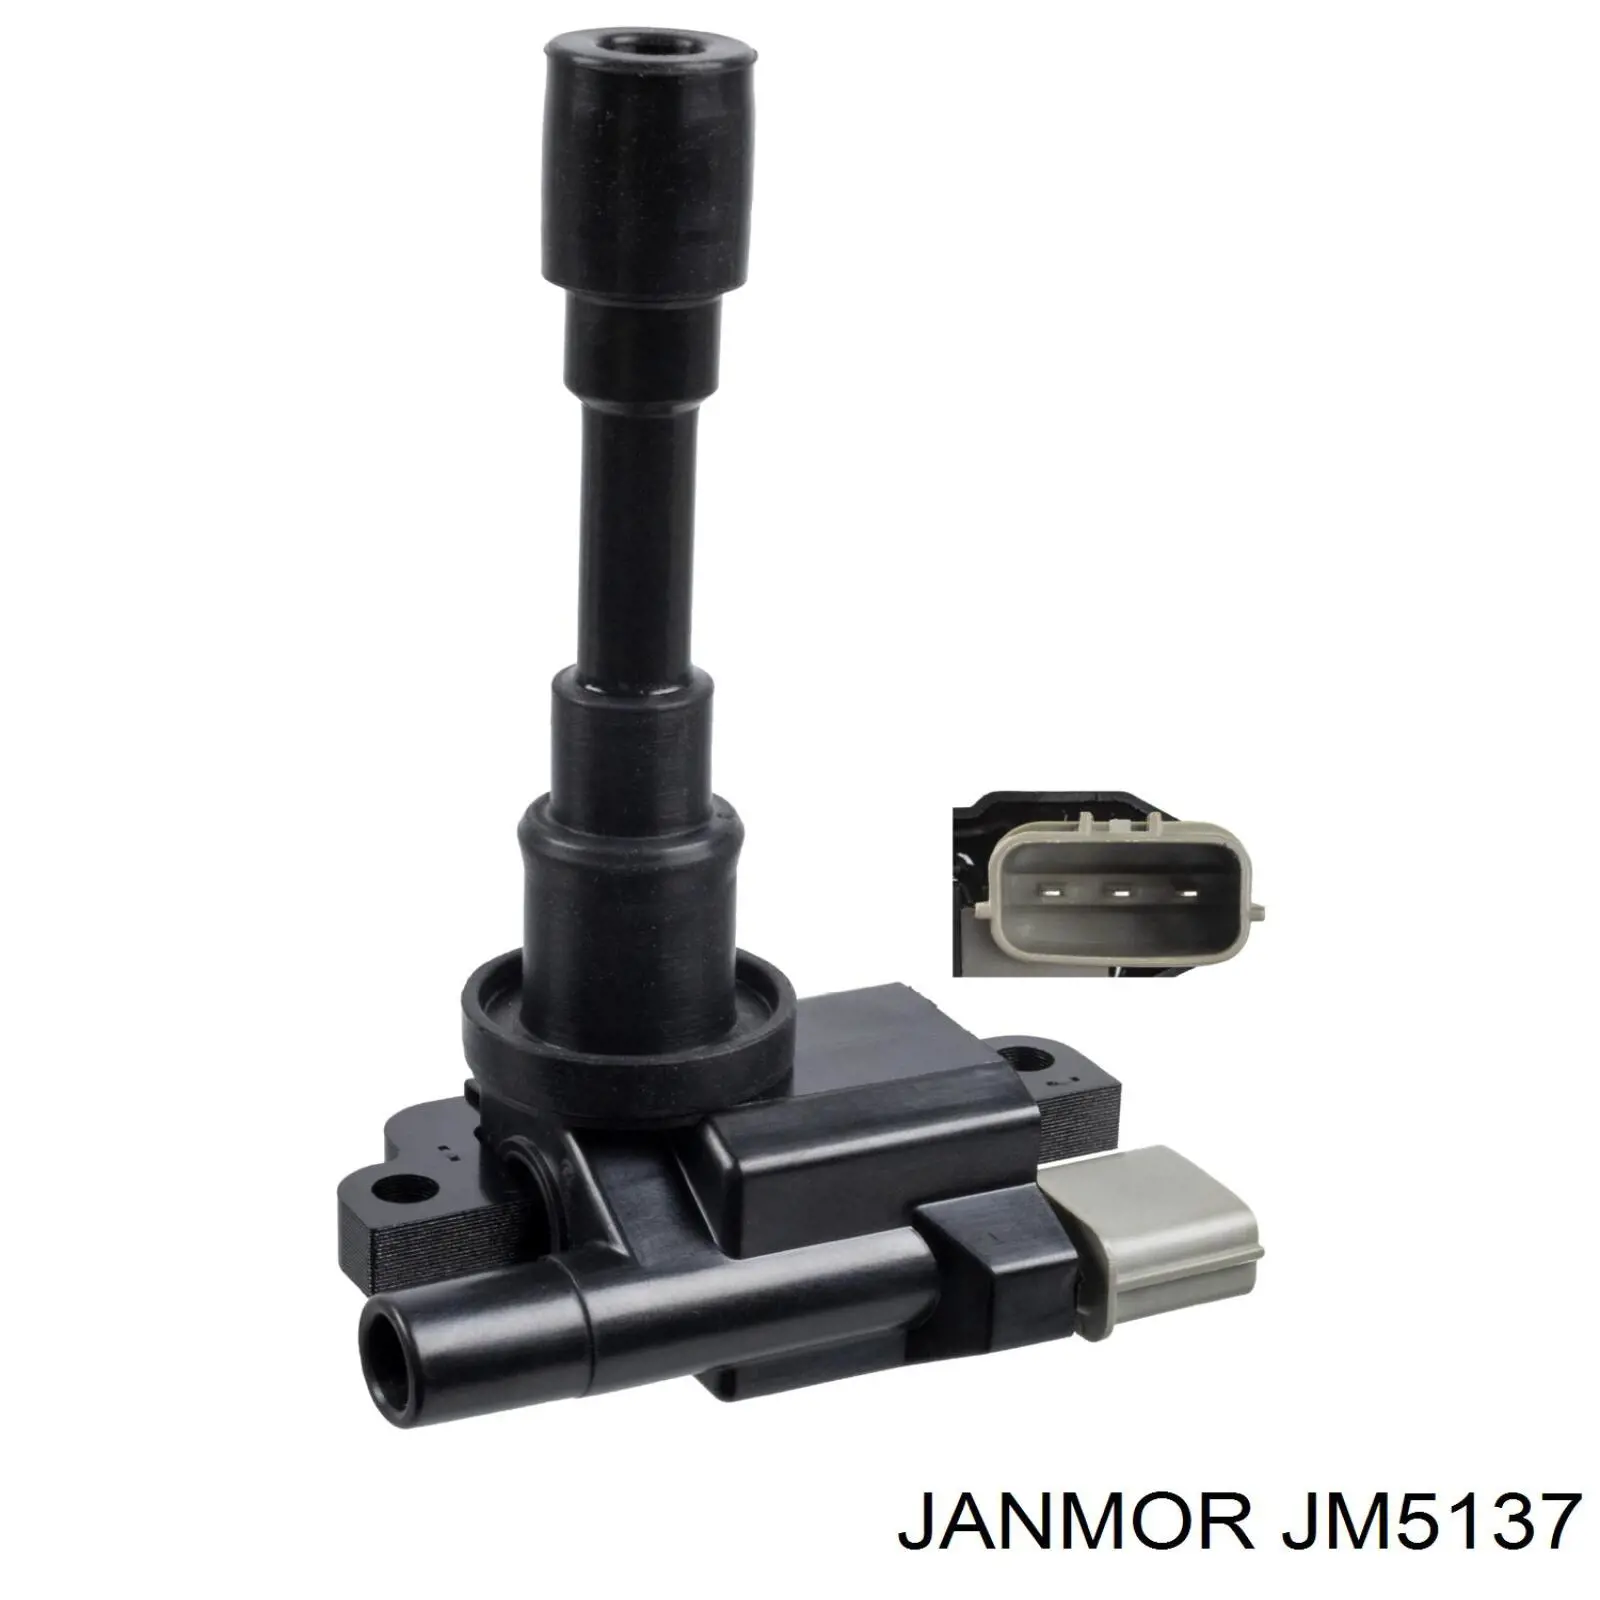 JM5137 Janmor bobina